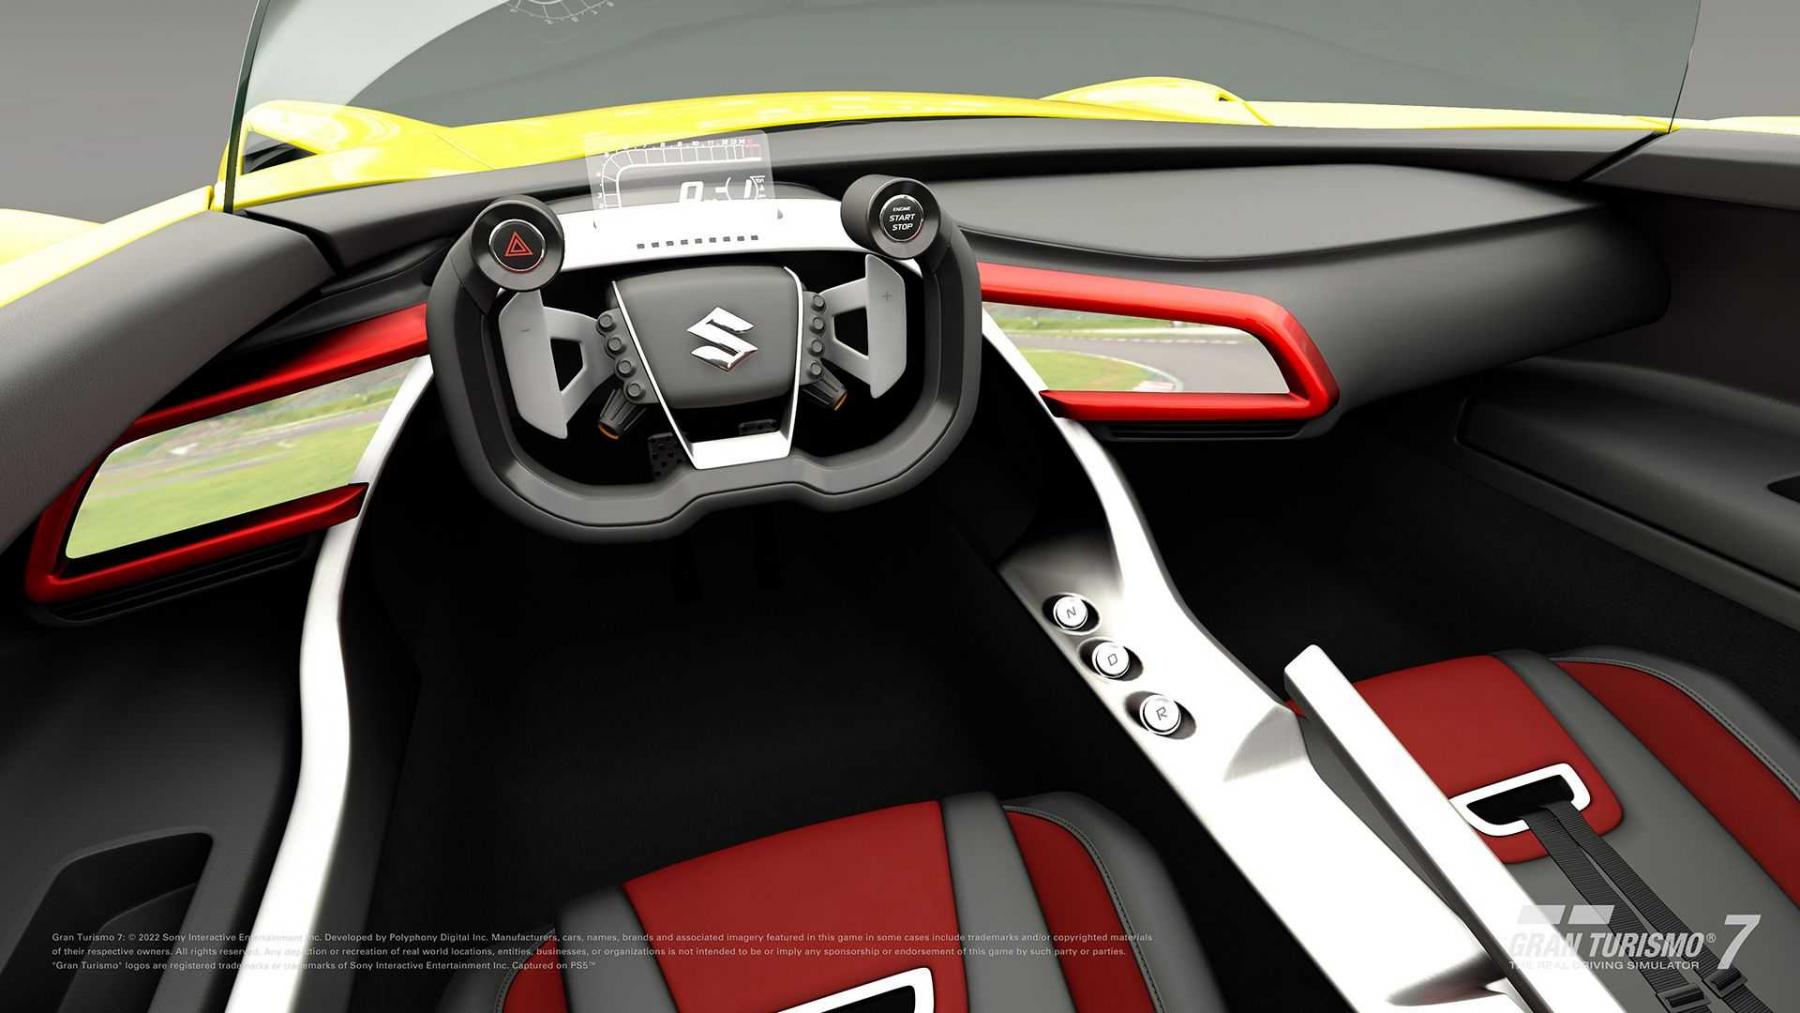 Suzuki Vision Gran Turismo Concept